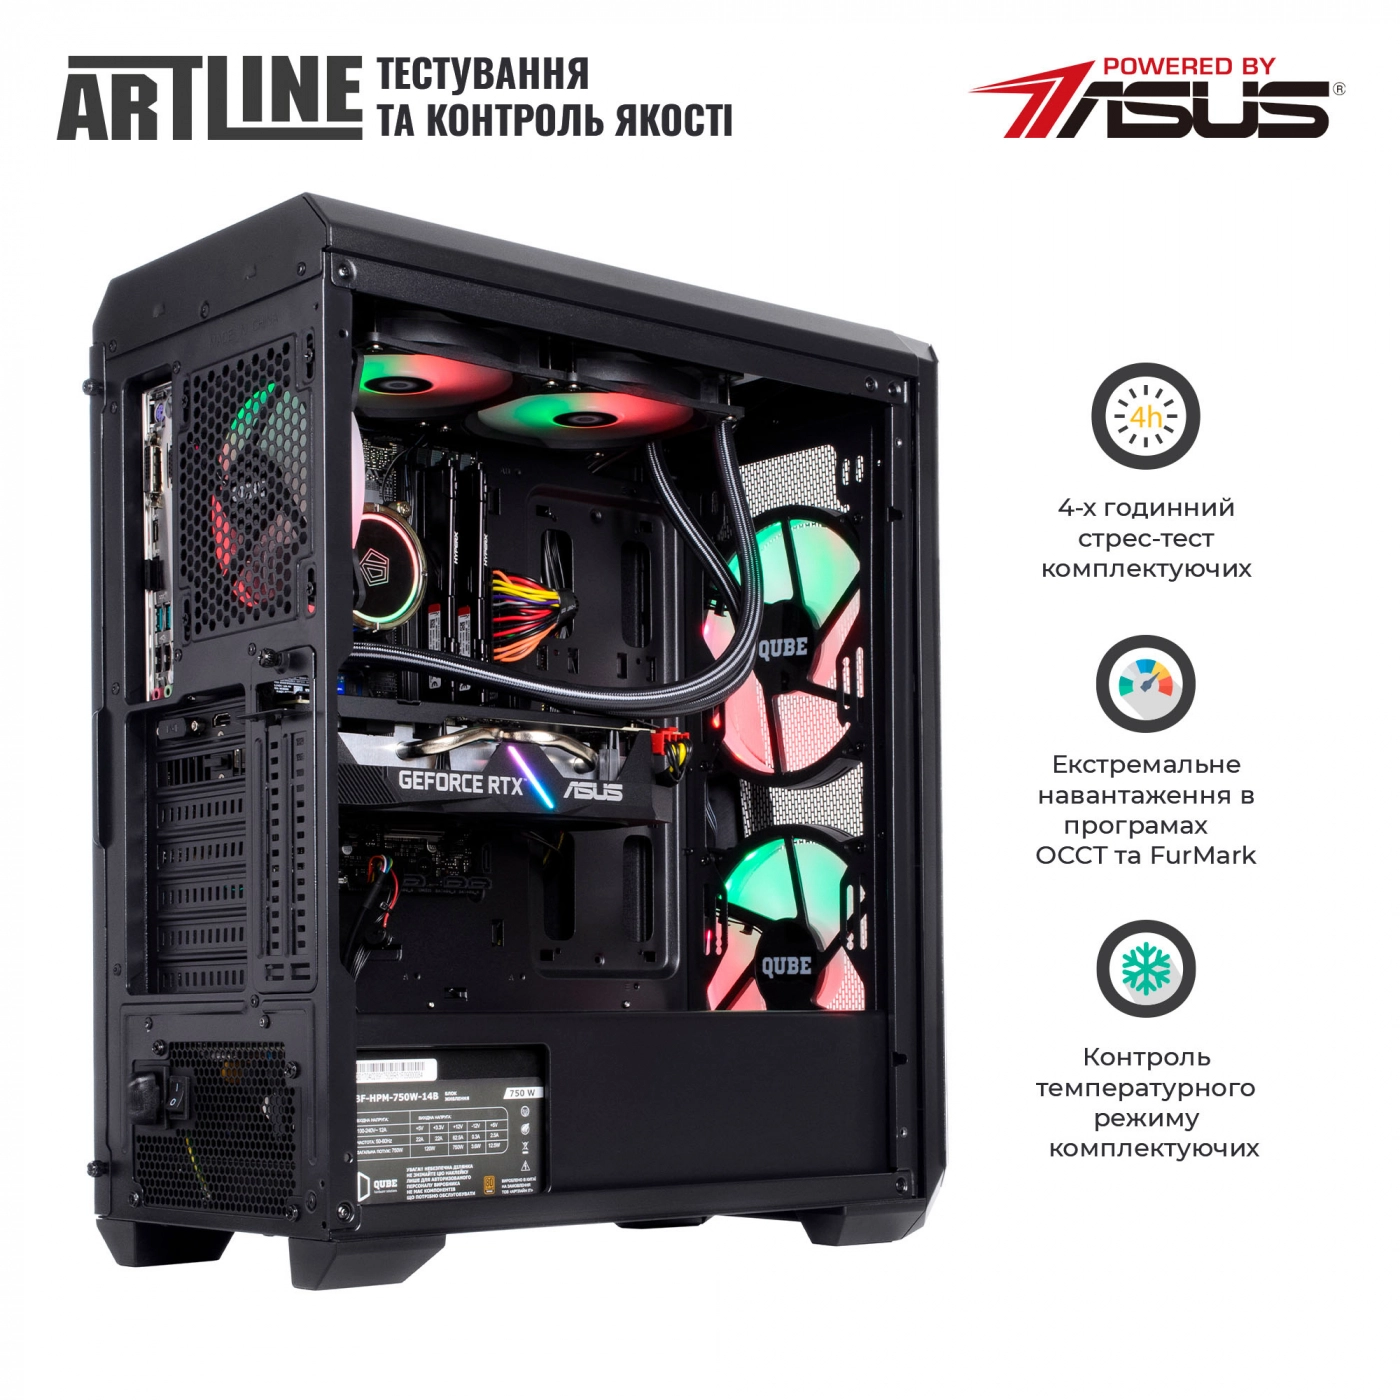 Купить Компьютер ARTLINE Gaming X79v69 - фото 7